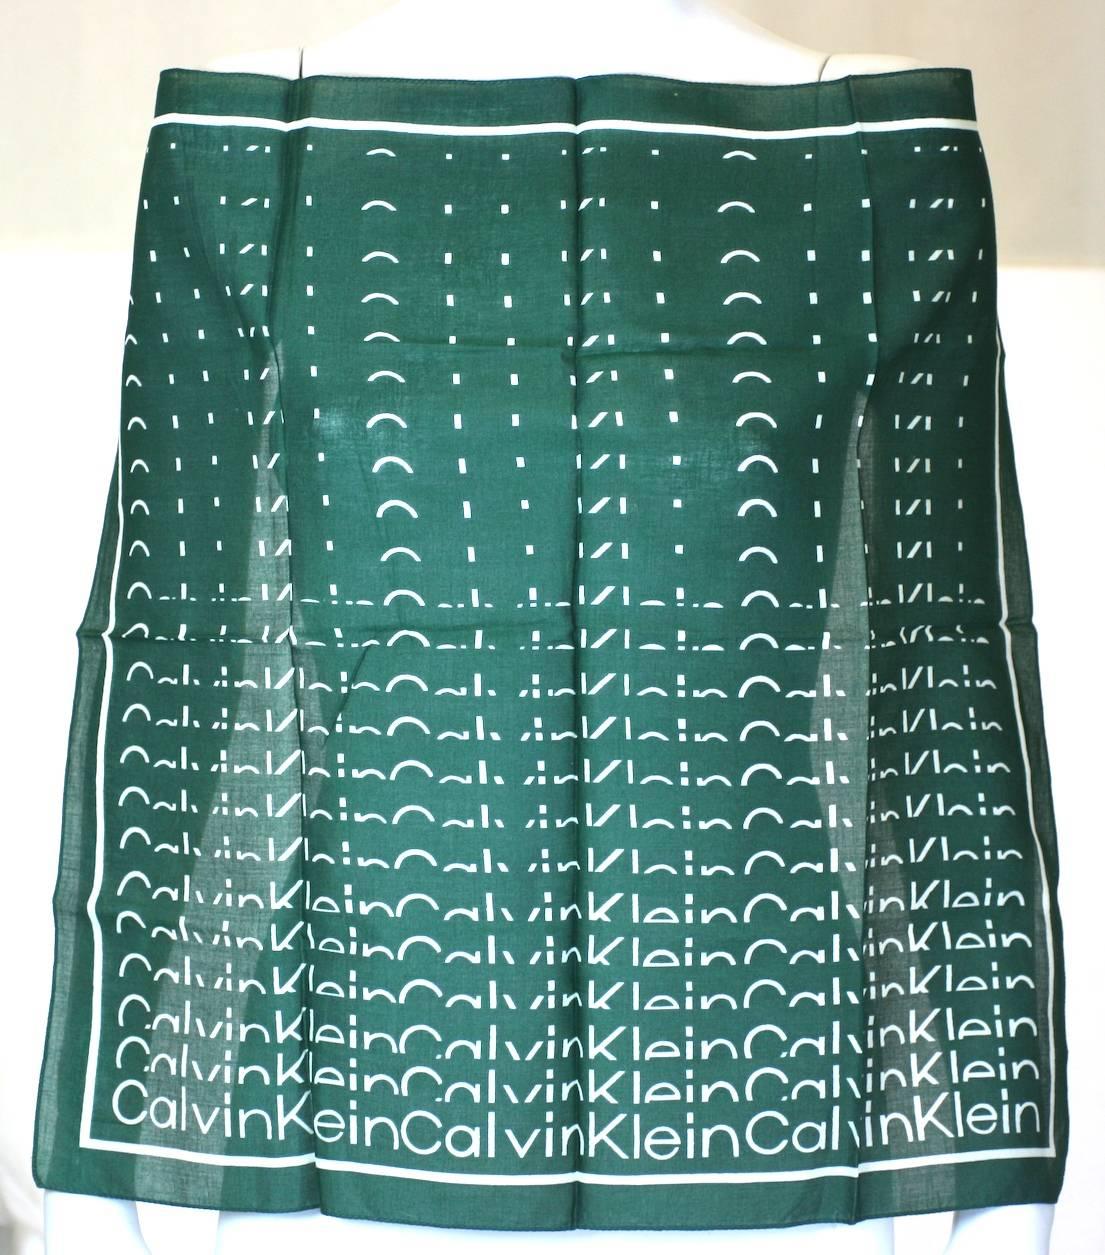 Calvin Klein Logo-Schal mit ikonischer Schriftart. Reproduziert als abbauende Schrift auf immergrünem Baumwollträger. 
1970er Jahre USA. Ausgezeichneter Zustand. 
Quadratisch 22